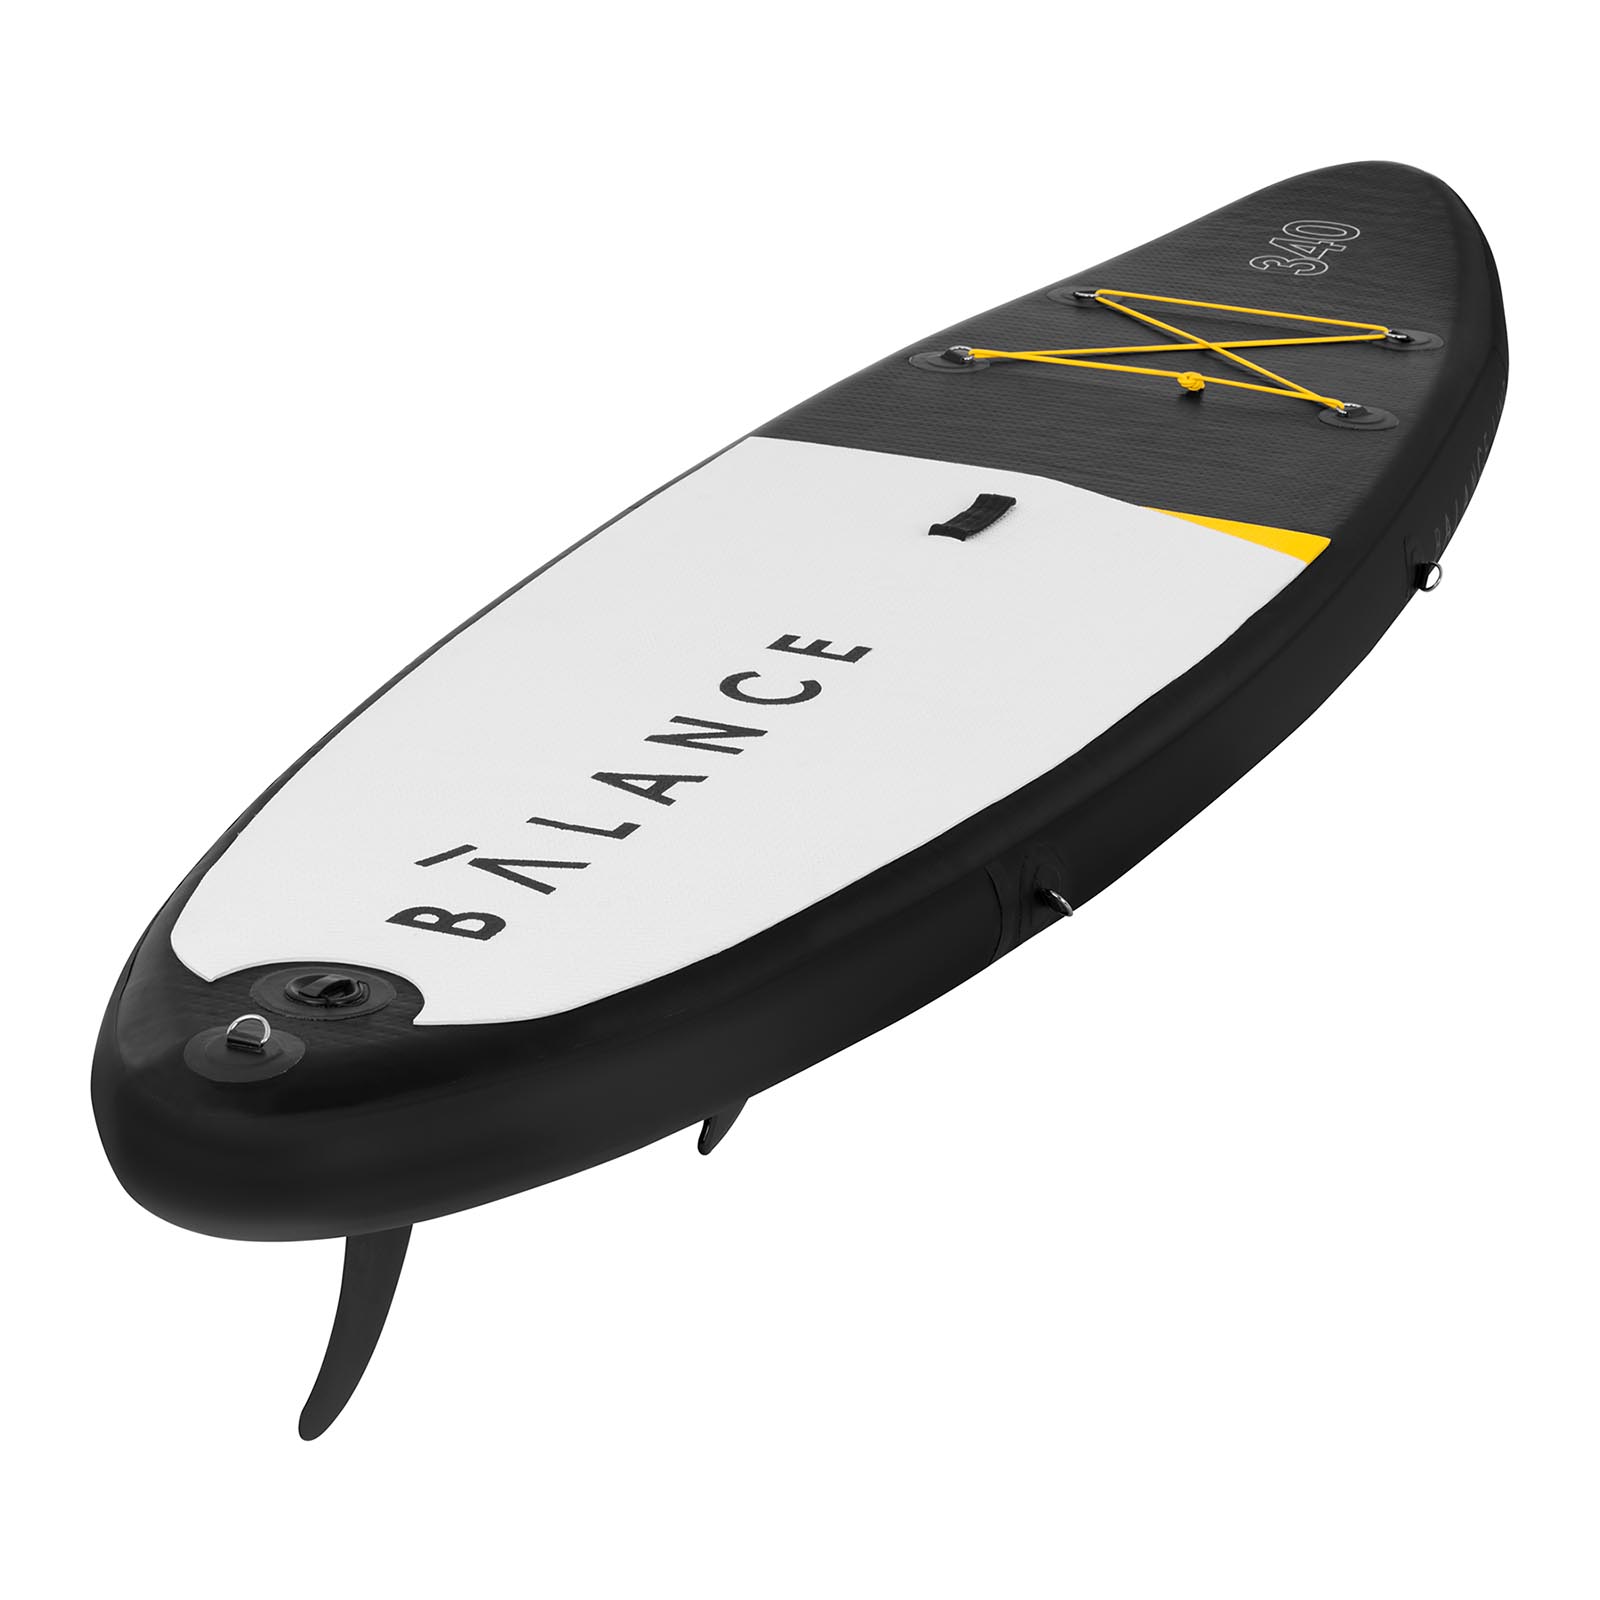 Nafukovací paddleboard - 145 kg - 335 x 79 x 15 cm